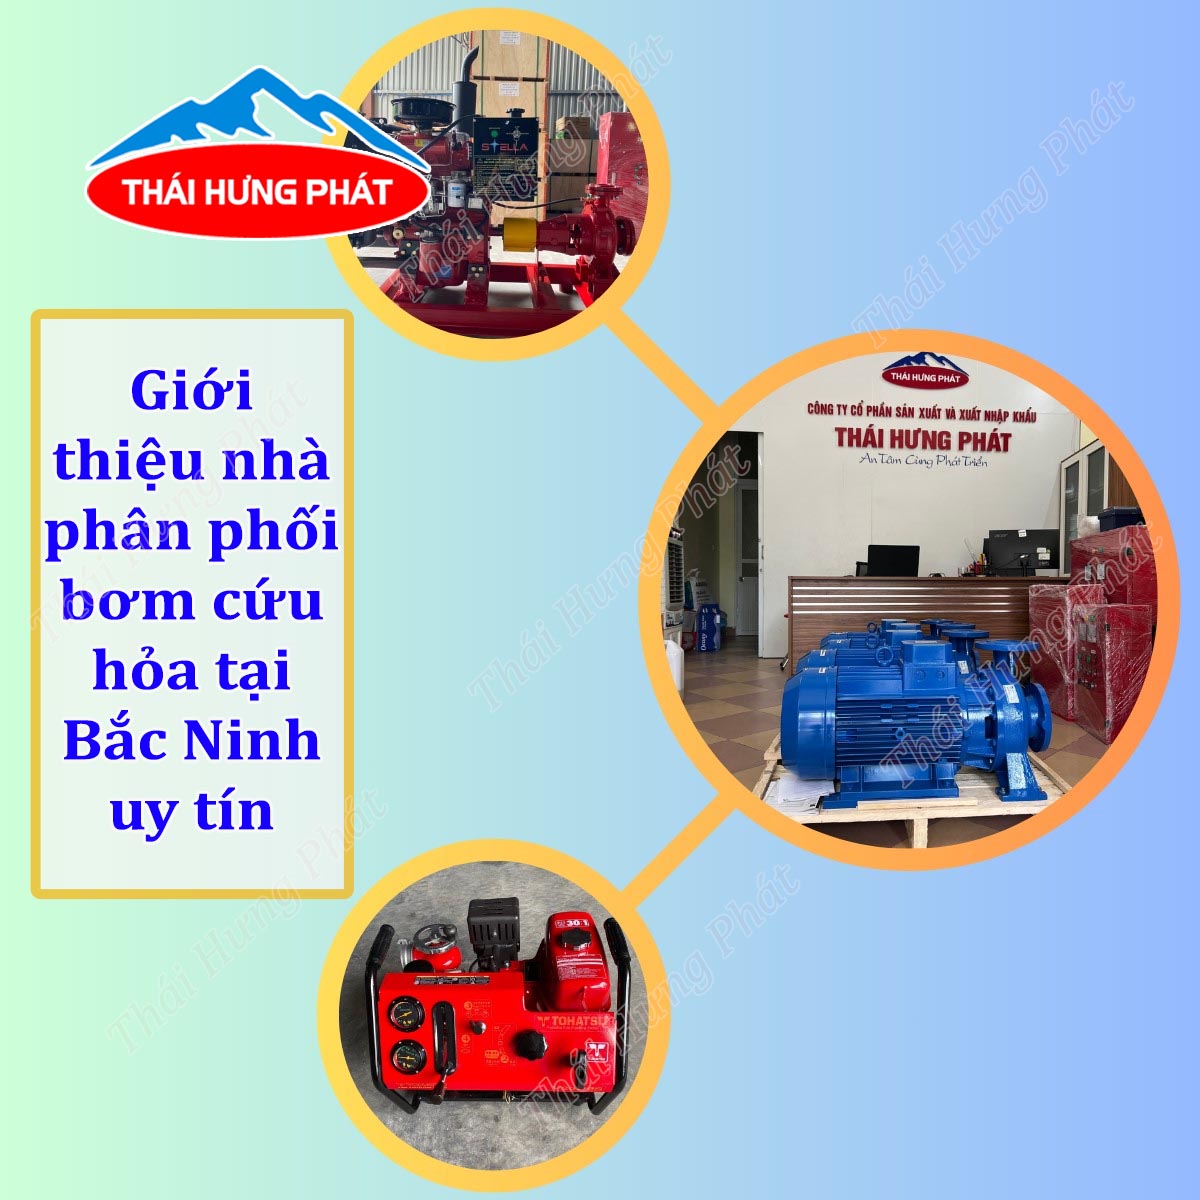 Nhà cung cấp máy bơm phòng cháy tại Bắc Ninh chất lượng, giá rẻ